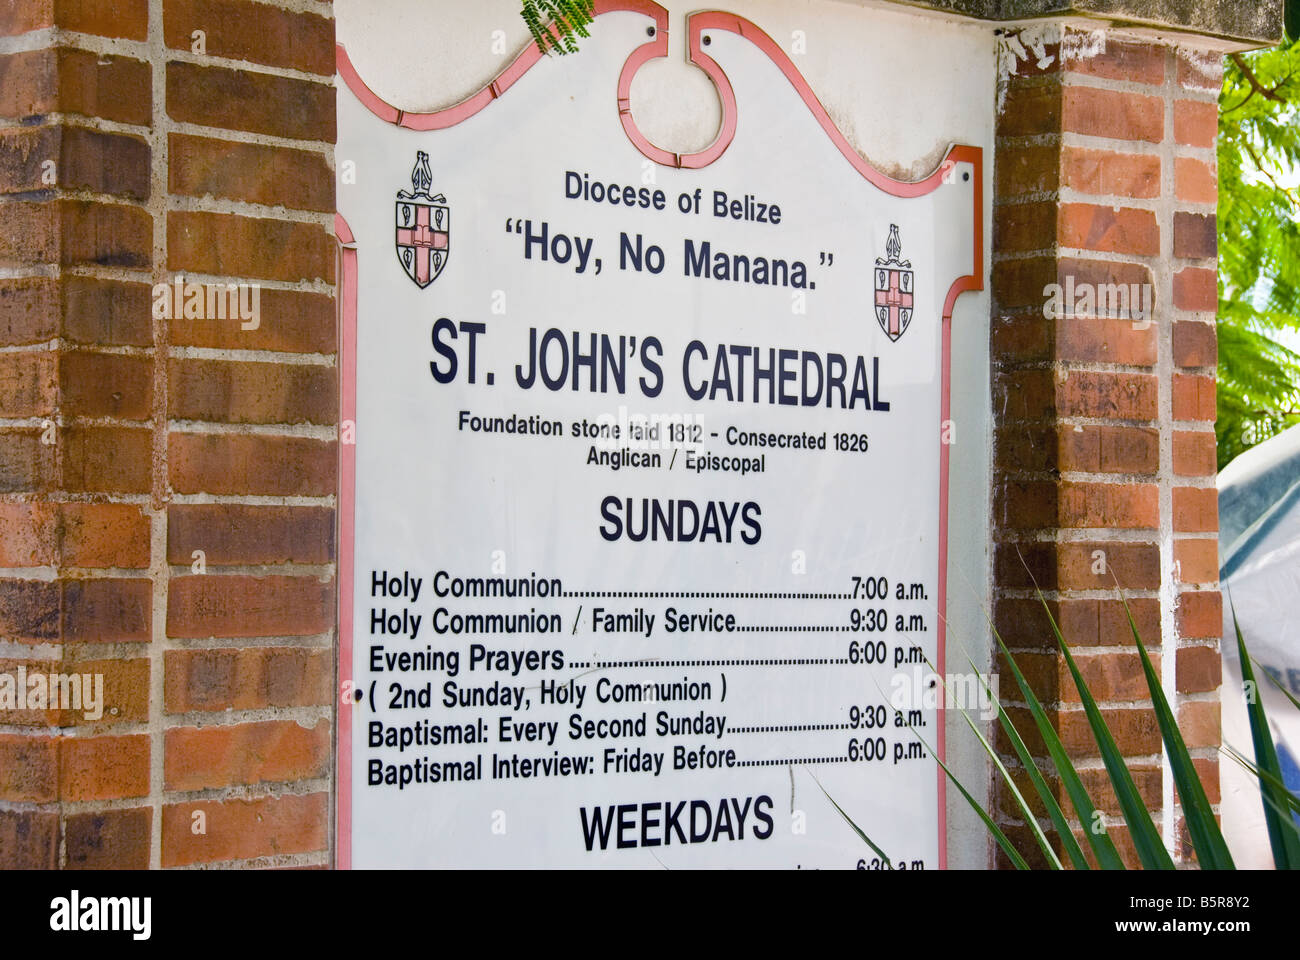 Belize City attraction touristique St John,s Cathedral marqueur Hoy no Manana église anglicane Banque D'Images